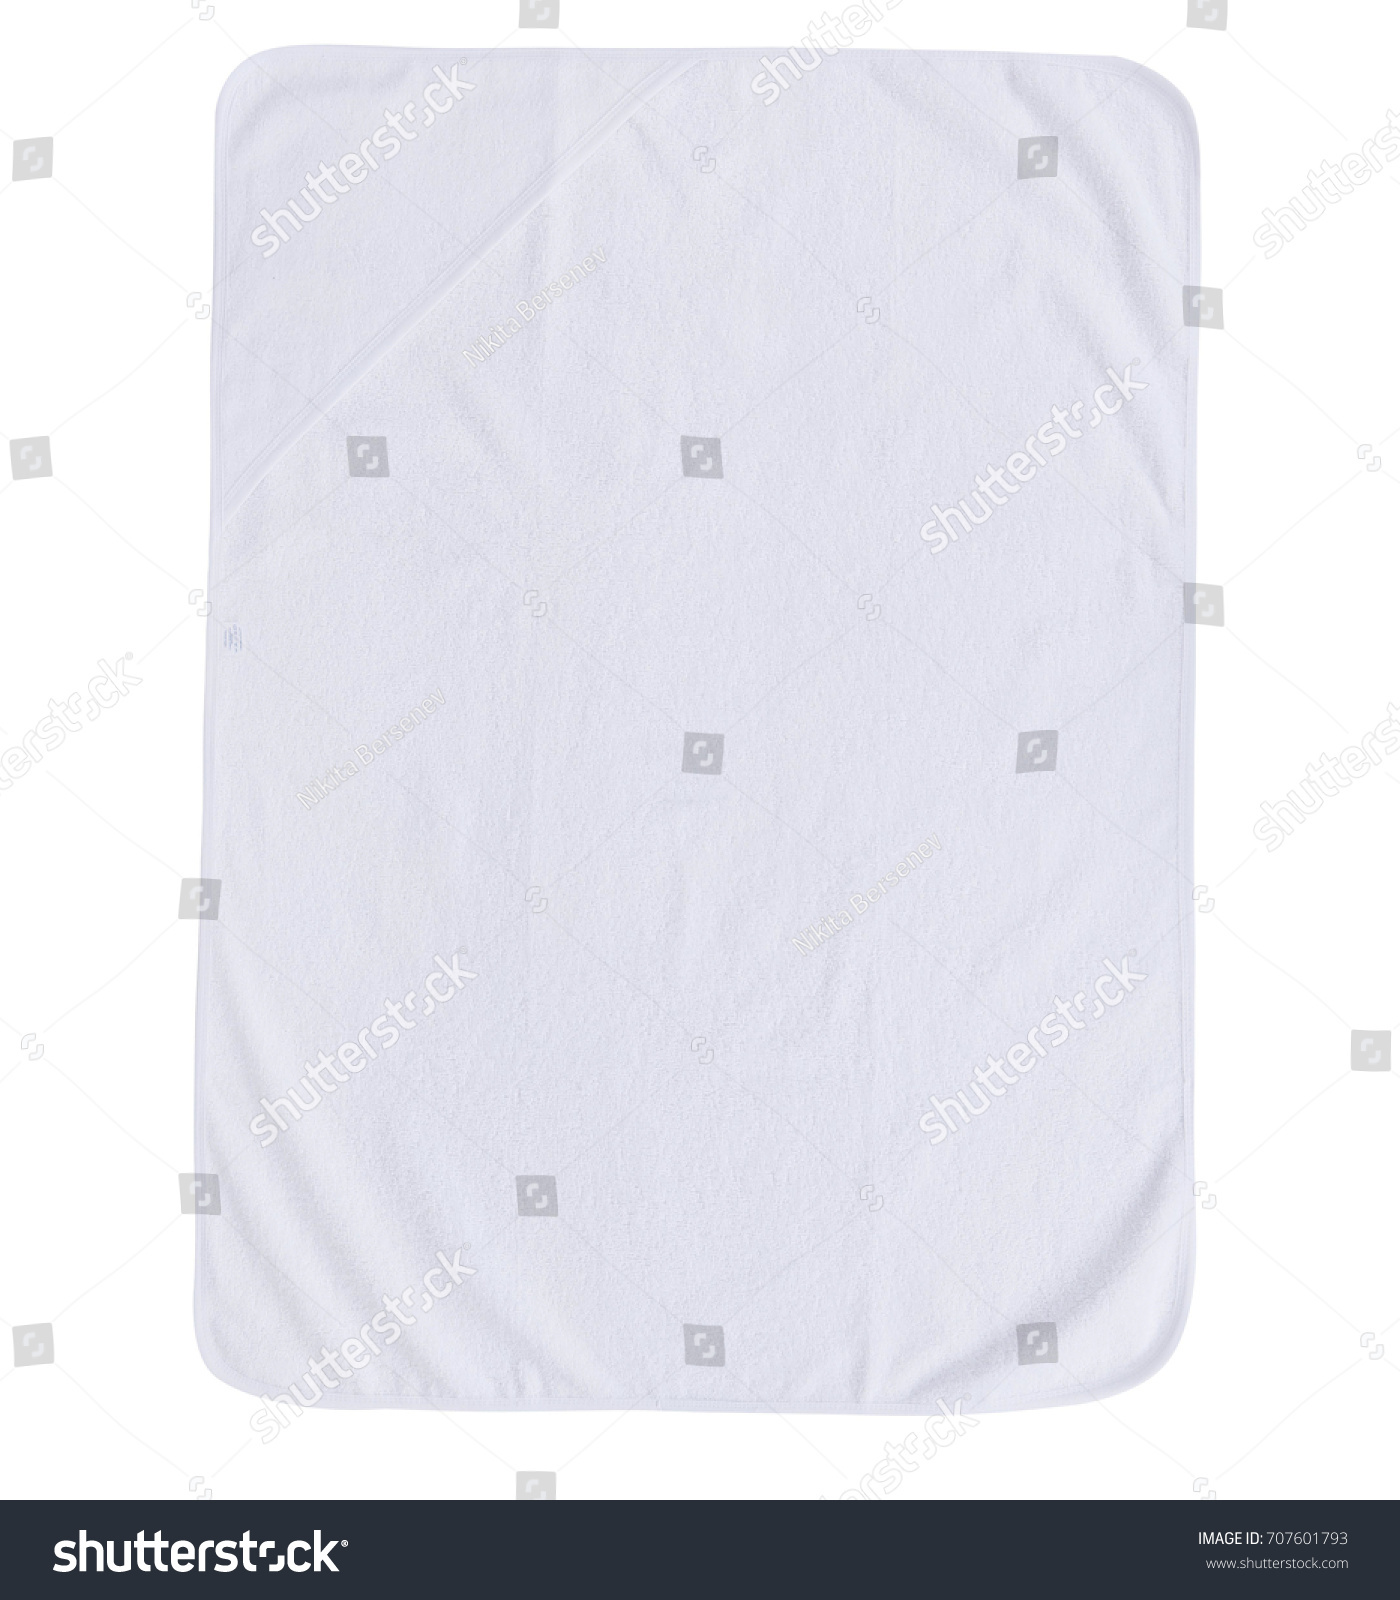 Linens for kids, baby linens, children's linens isolated on white background #707601793